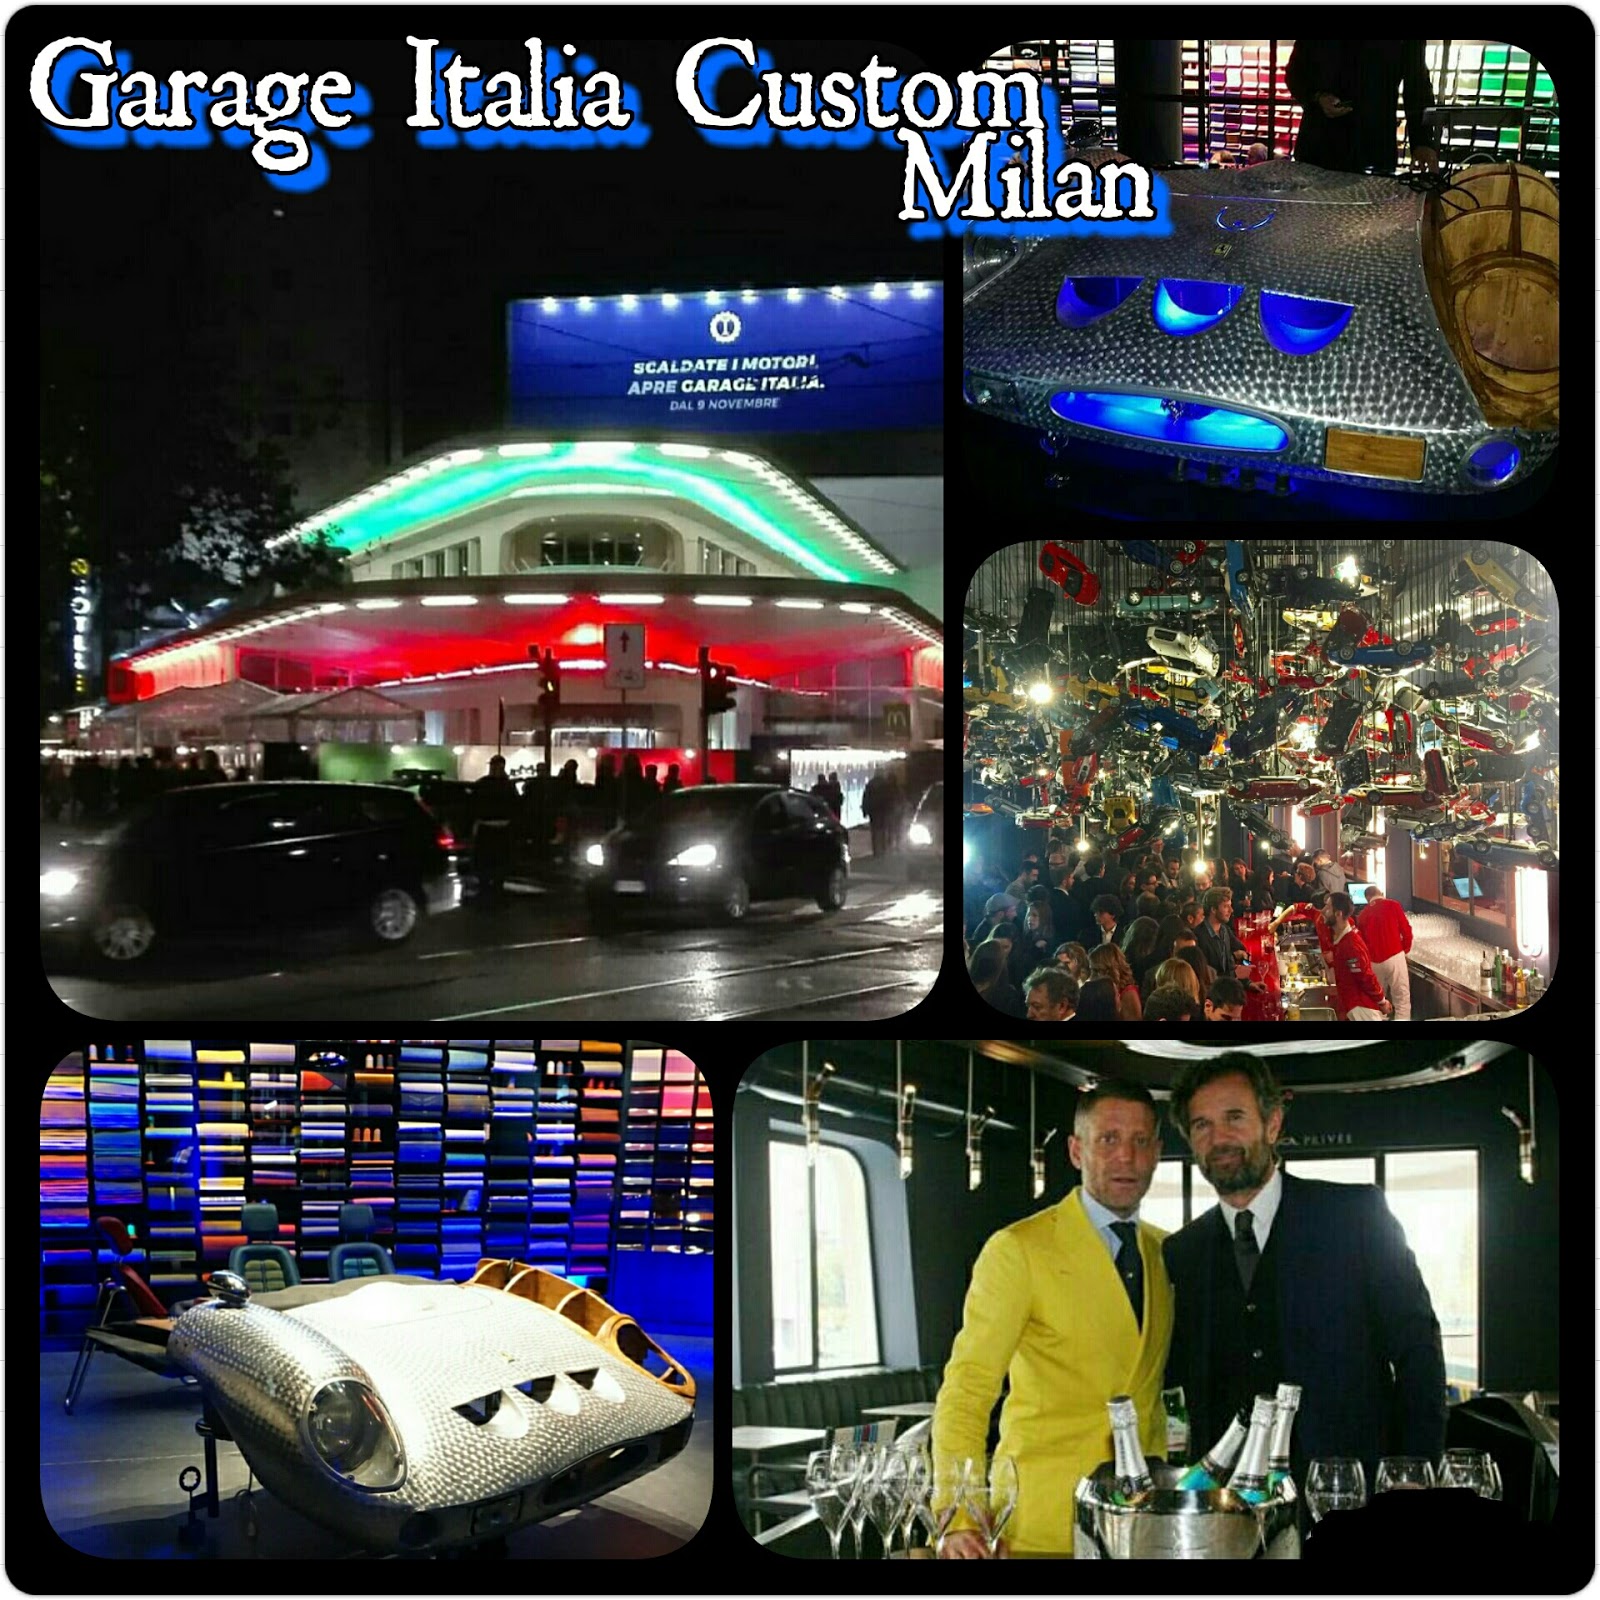 Garage Italia Customs: Carlo Cracco cucina per Lapo Elkann in una Stazione Agip...